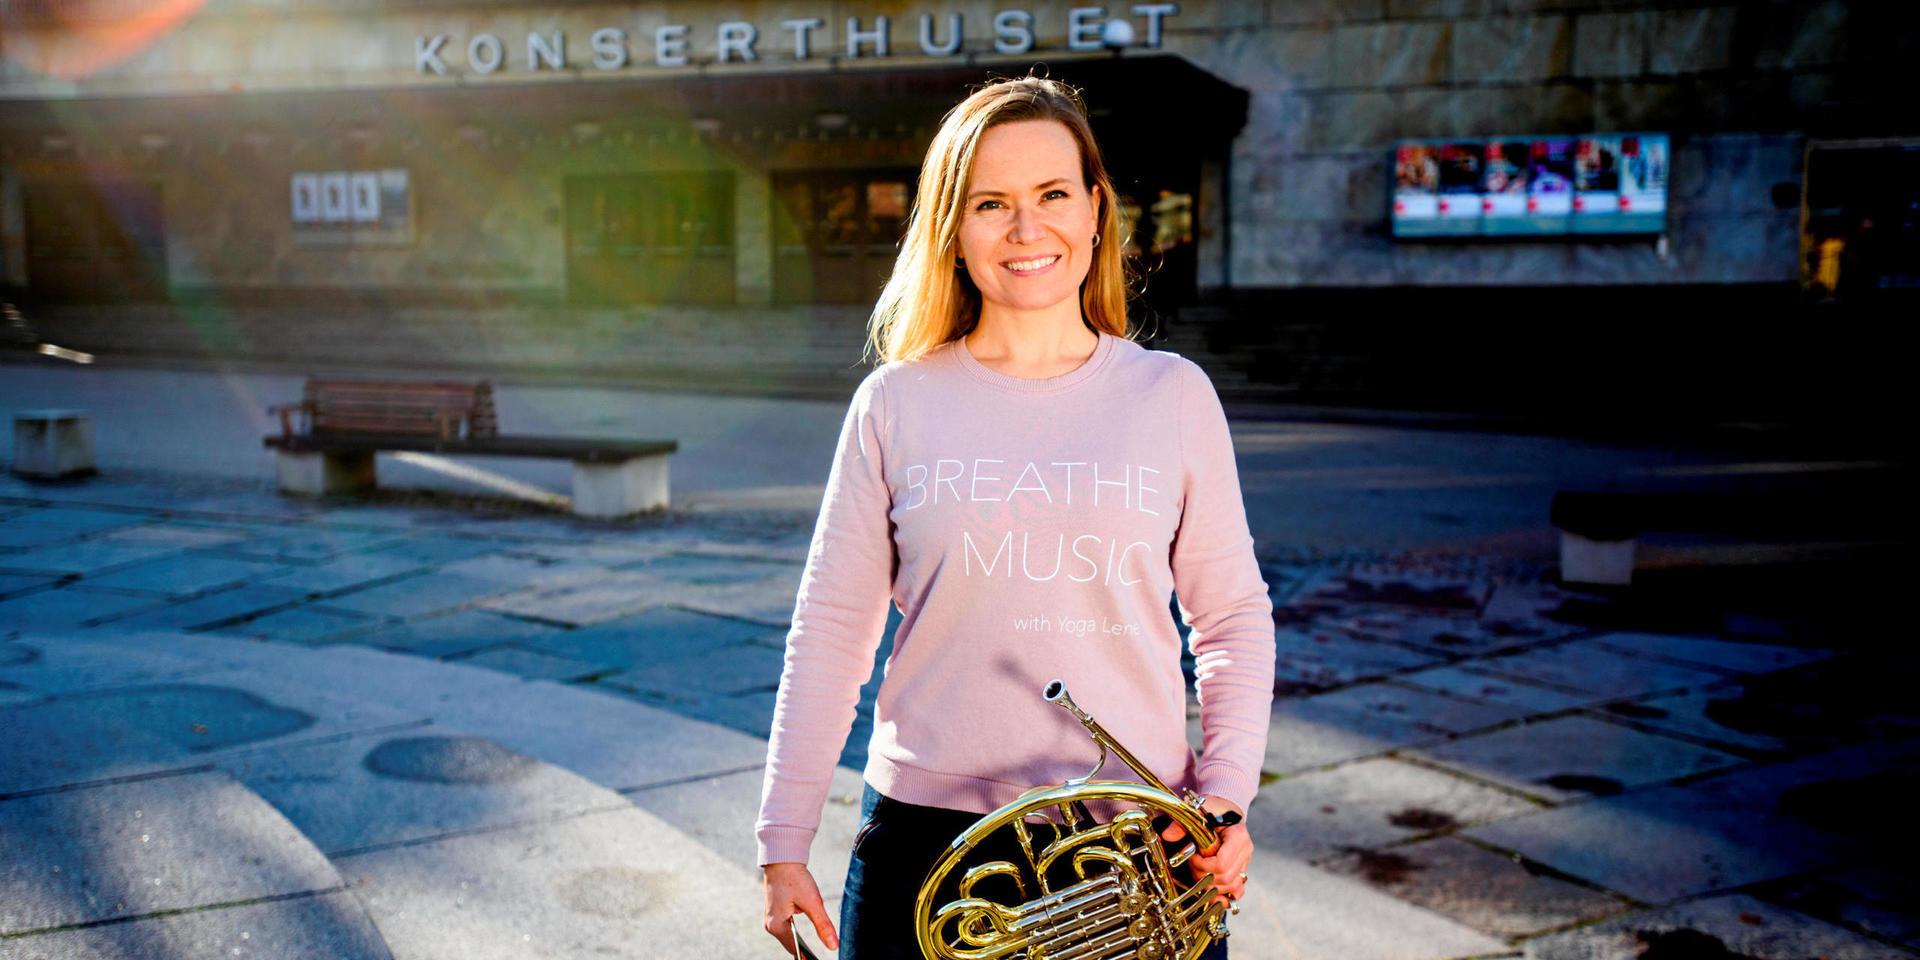 Hornisten Lene Skomedal håller yogaklasser för musiker och hoppas kunna inspirera även andra yogalärare att smala av och specialisera sig. Söndag 24 november håller hon en sedan länge slutsåld yogakonsert på Göteborgs konserthus.